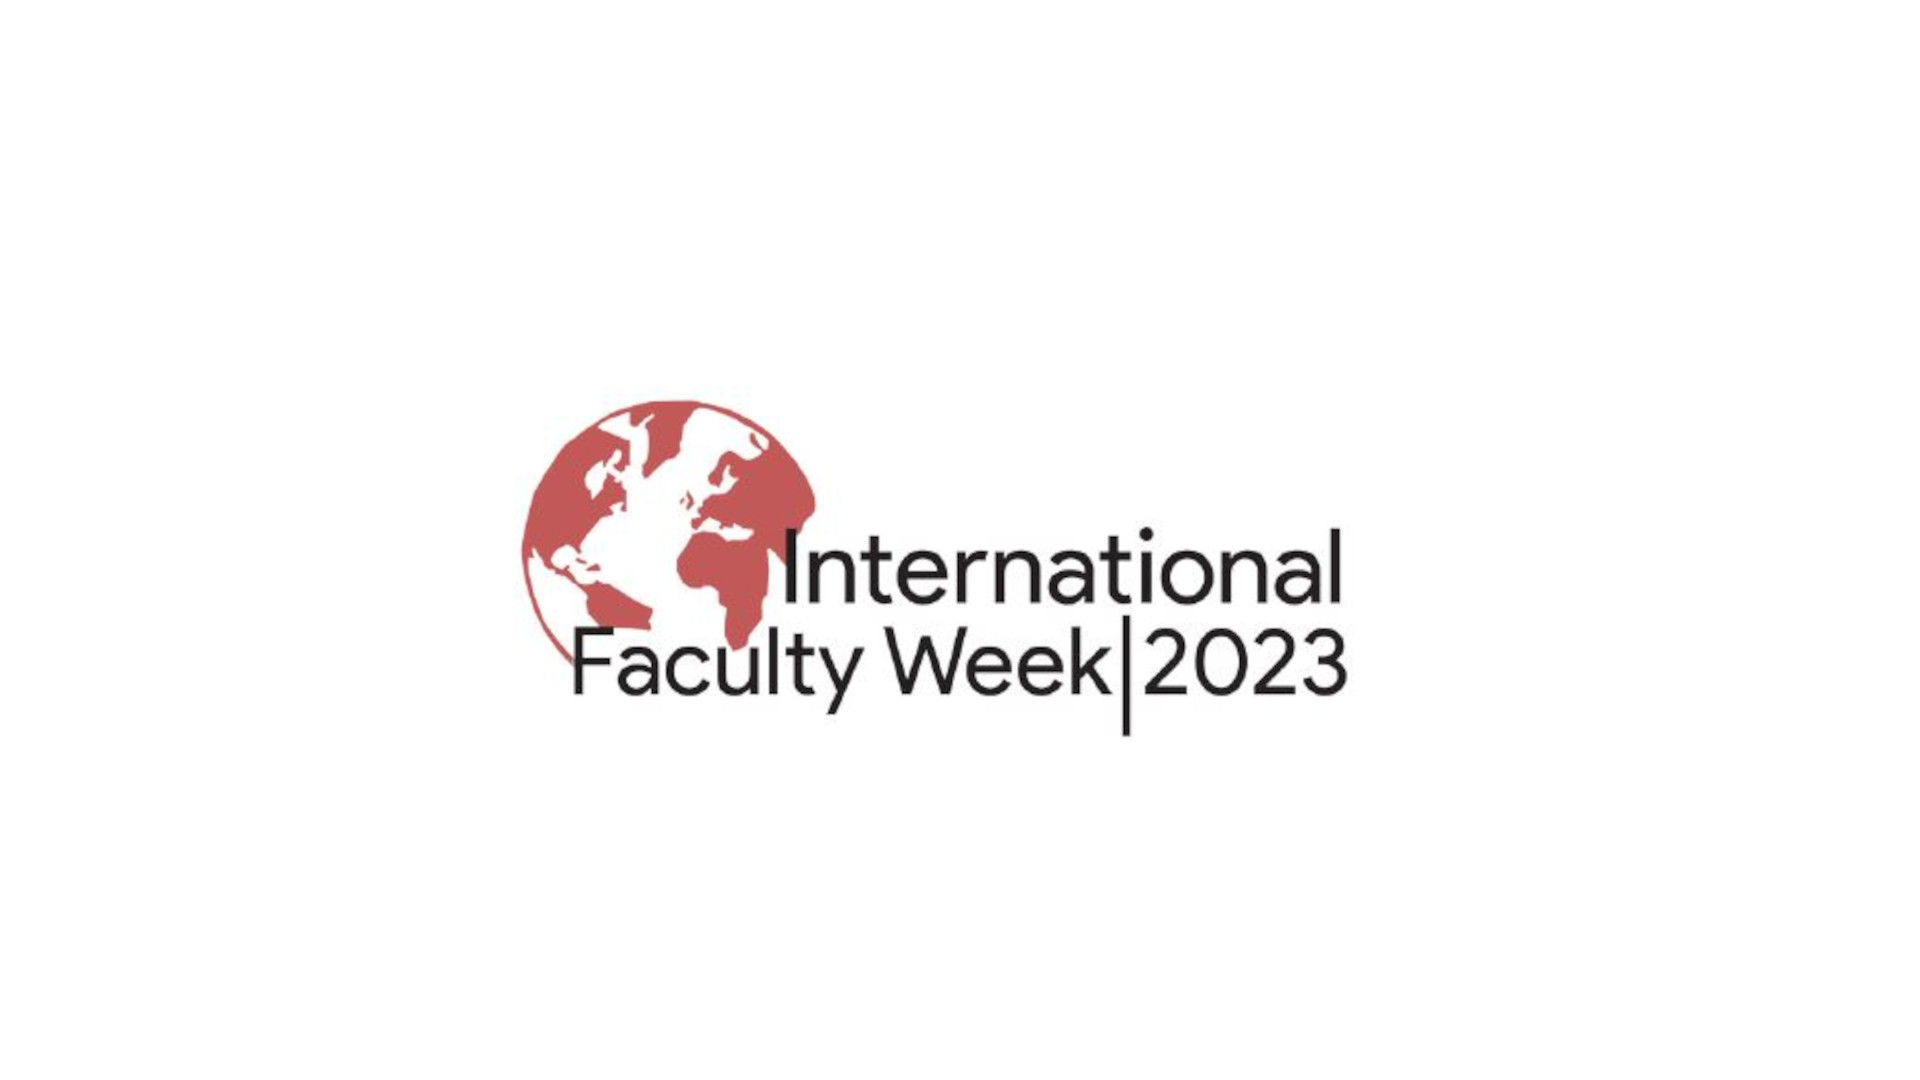 International Faculty Week 2023, Tec de Monterrey